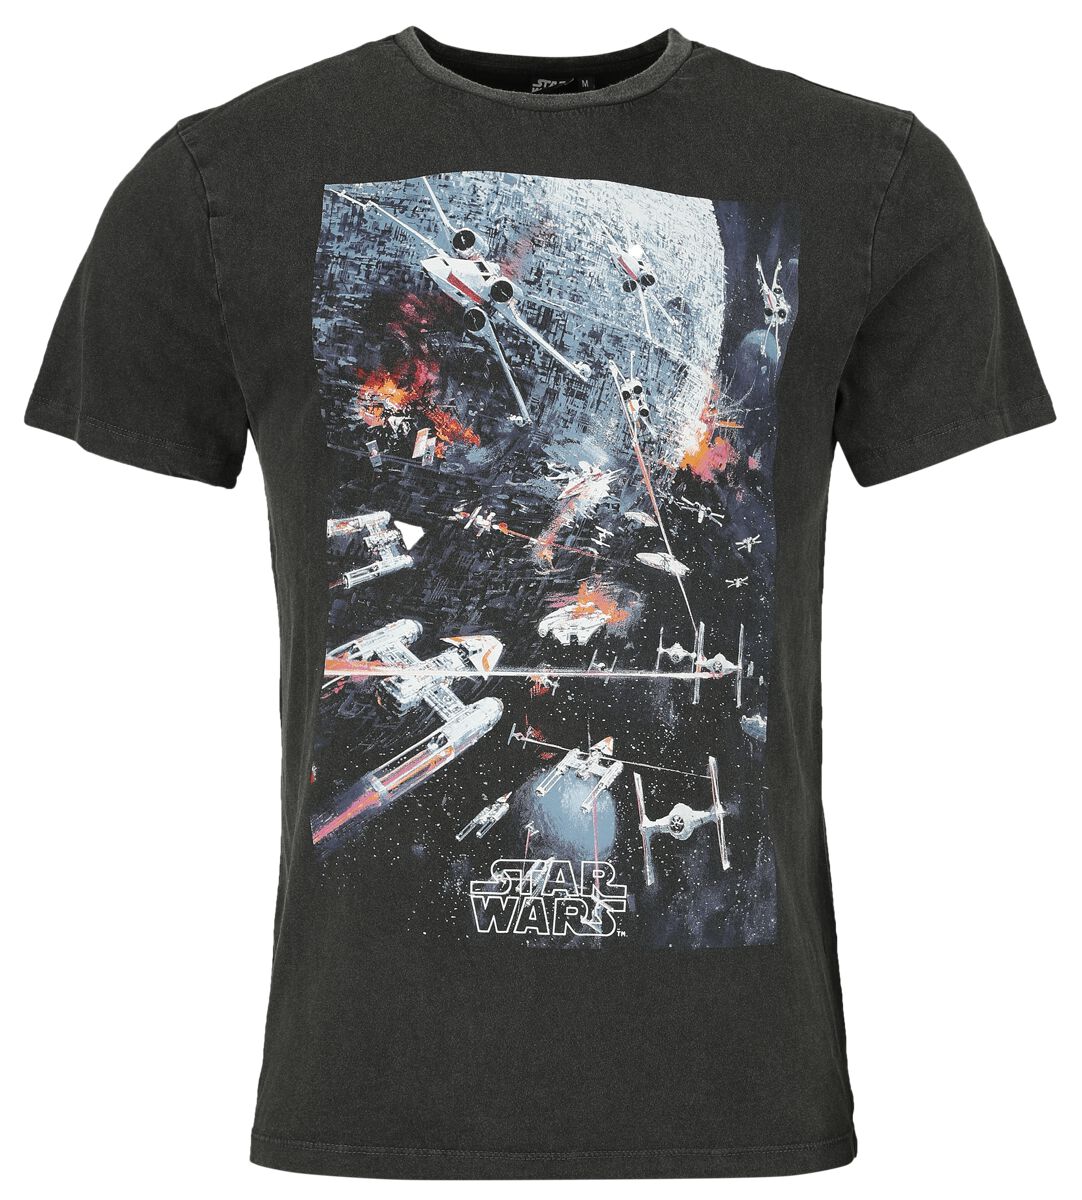 Star Wars T-Shirt - Classic - Space War - S bis XL - für Männer - Größe L - schwarz  - Lizenzierter Fanartikel